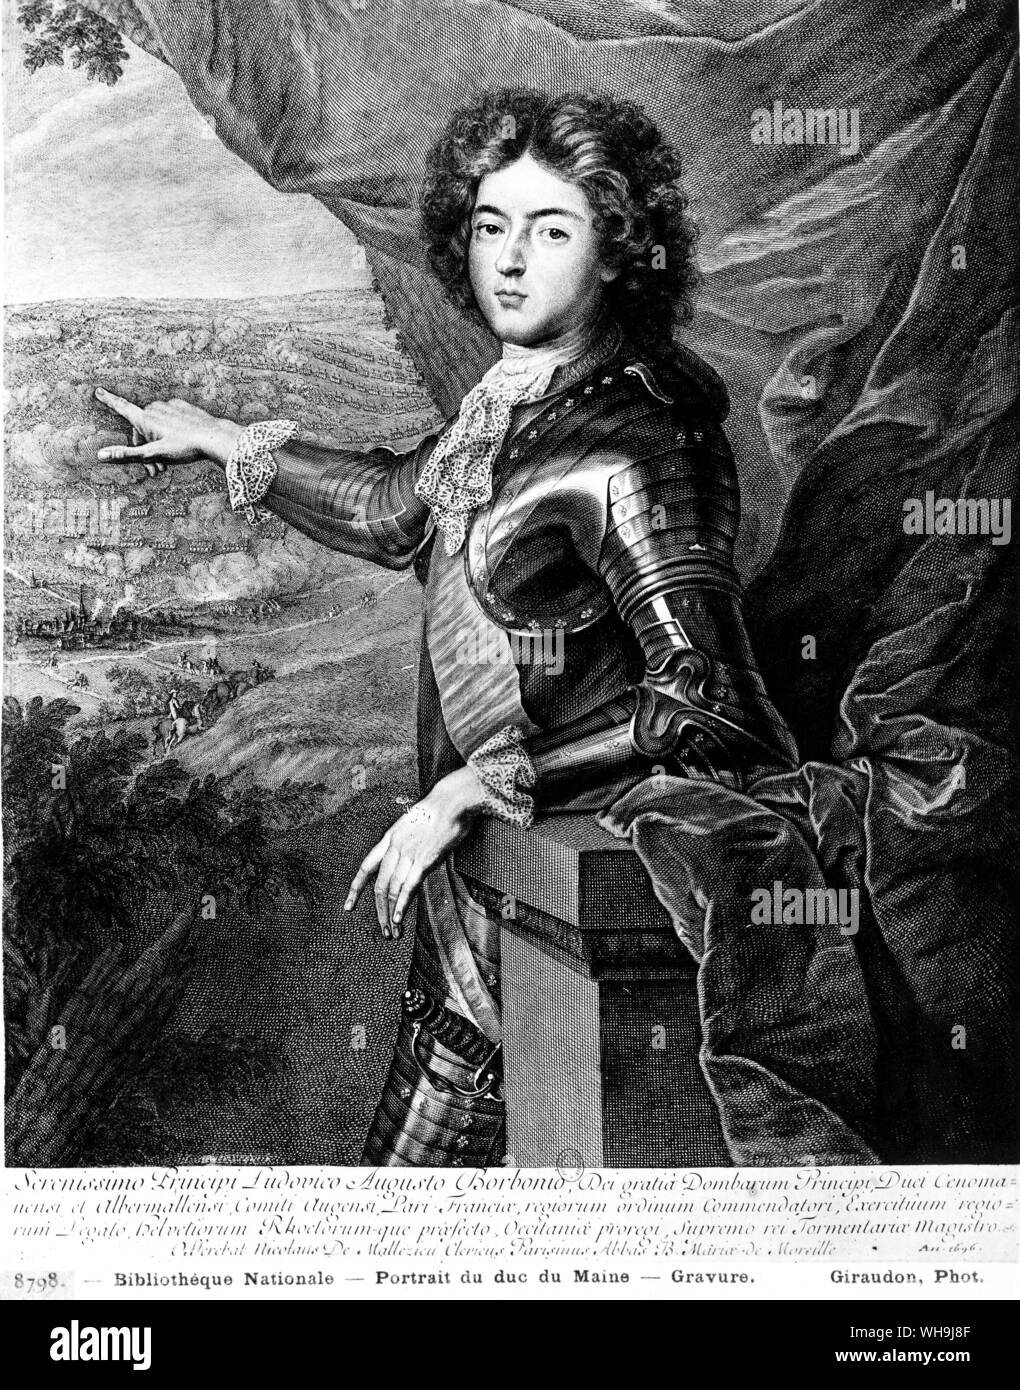 Portrait von Duc du Maine. Serenissimo Principi Ludovico Augusto Borbonio. Stockfoto